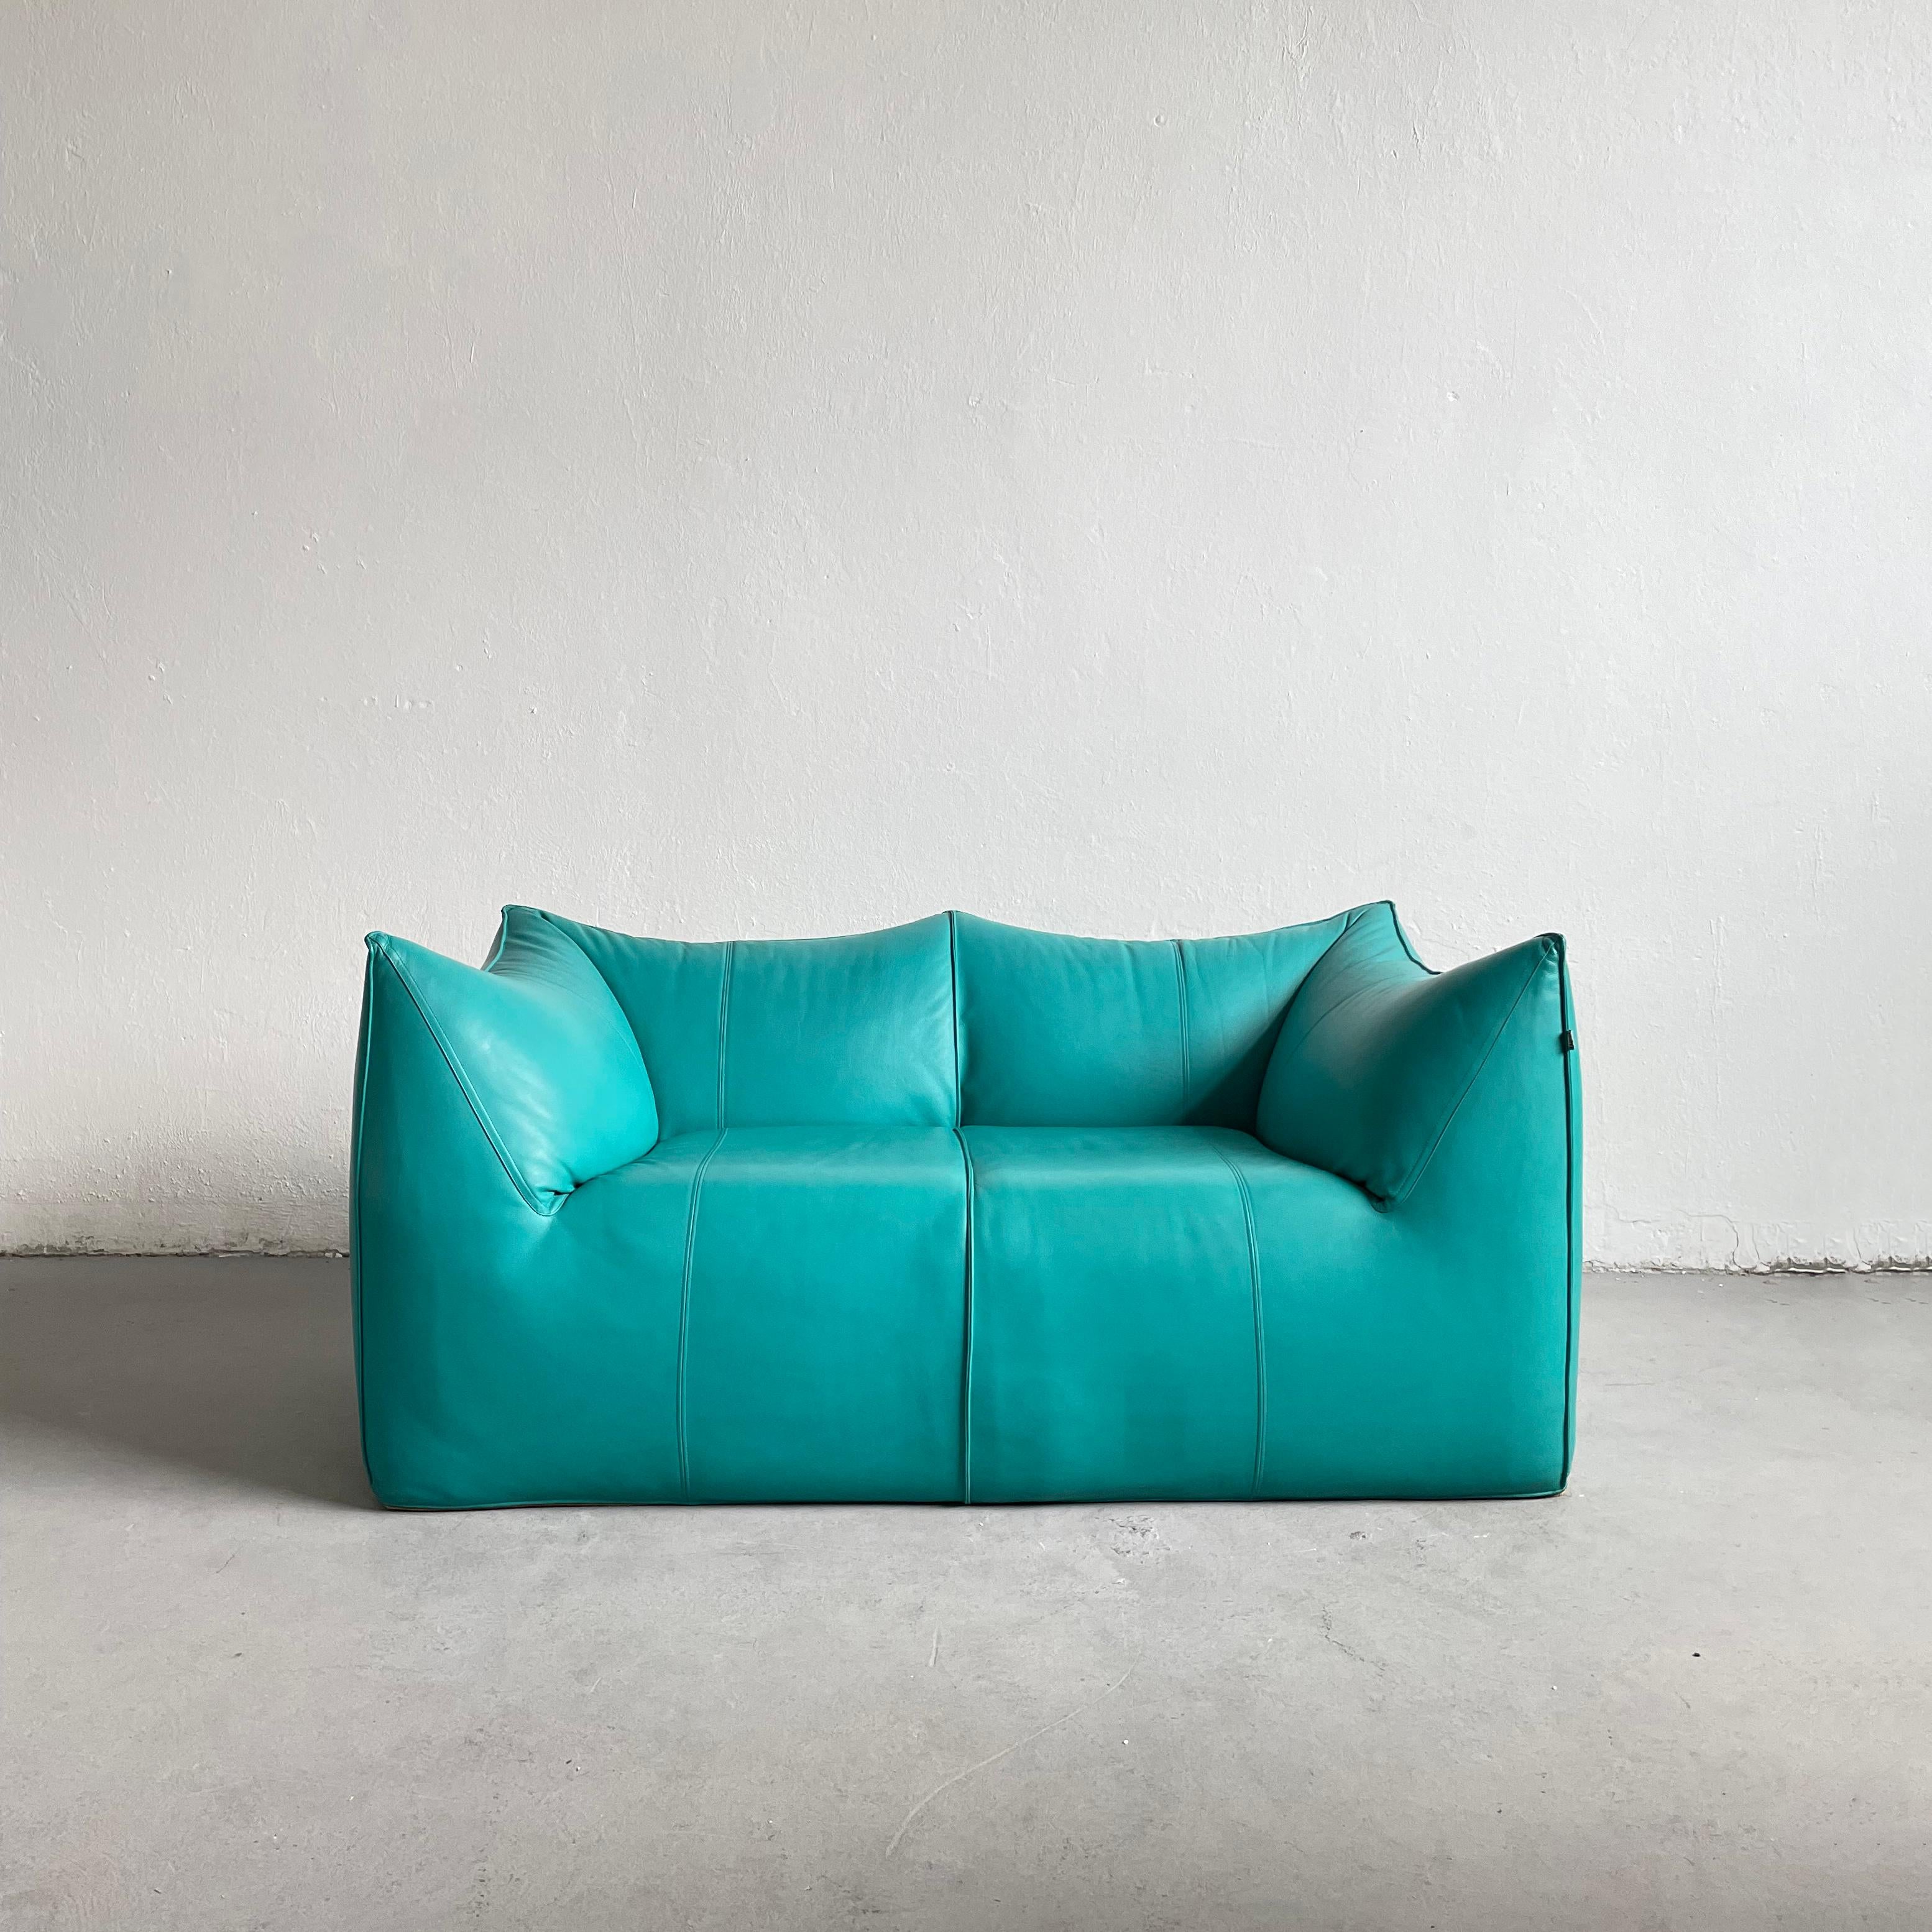 Le Bambole 2-Seater Sofa in Turquoise Leather, Mario Bellini for B&B Italia 70s For Sale 2